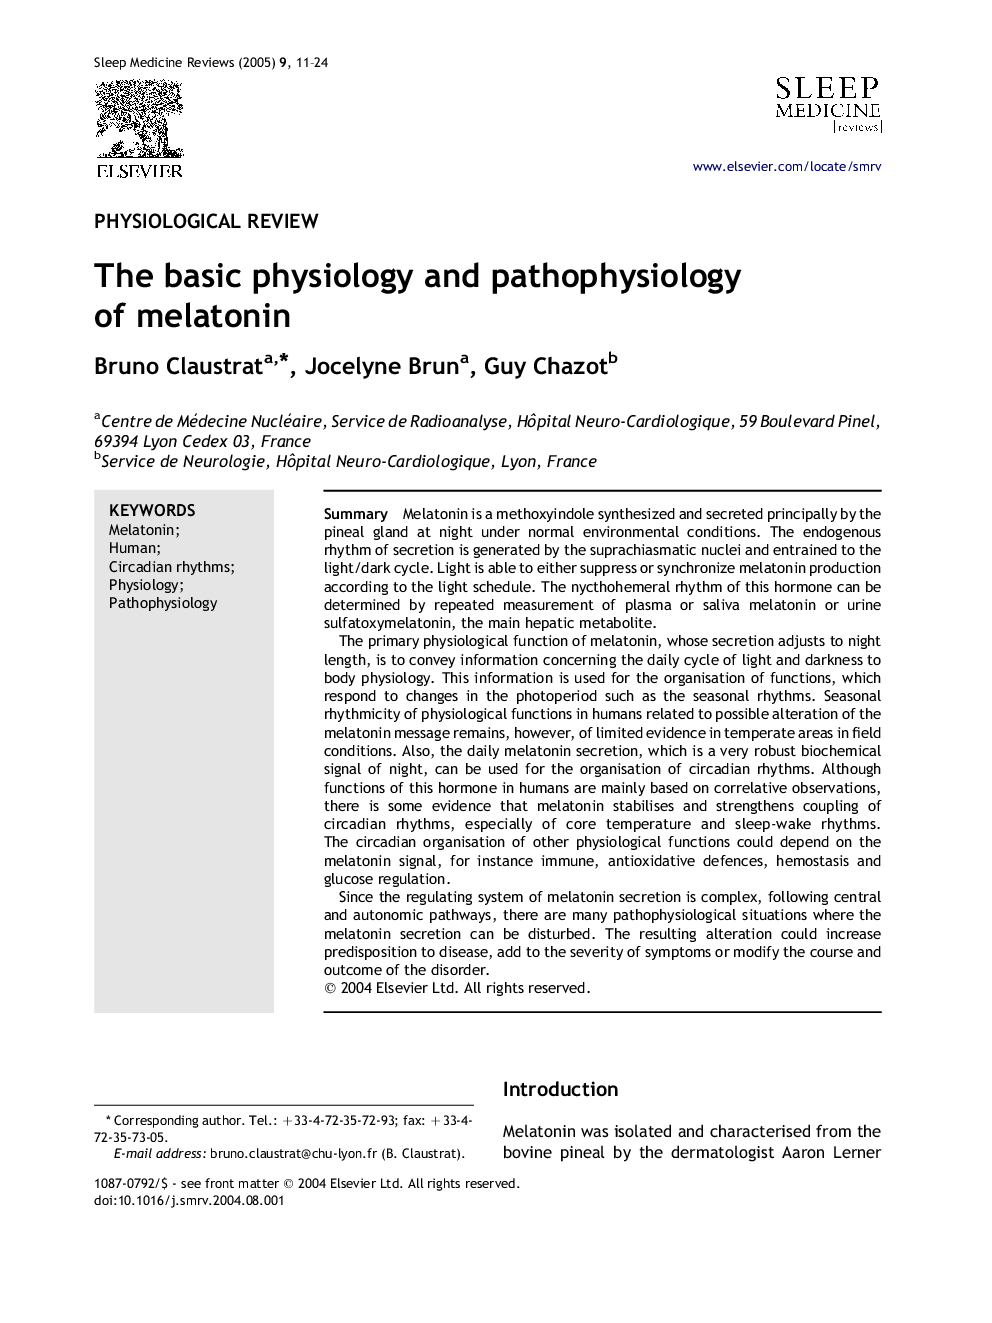 The basic physiology and pathophysiology of melatonin